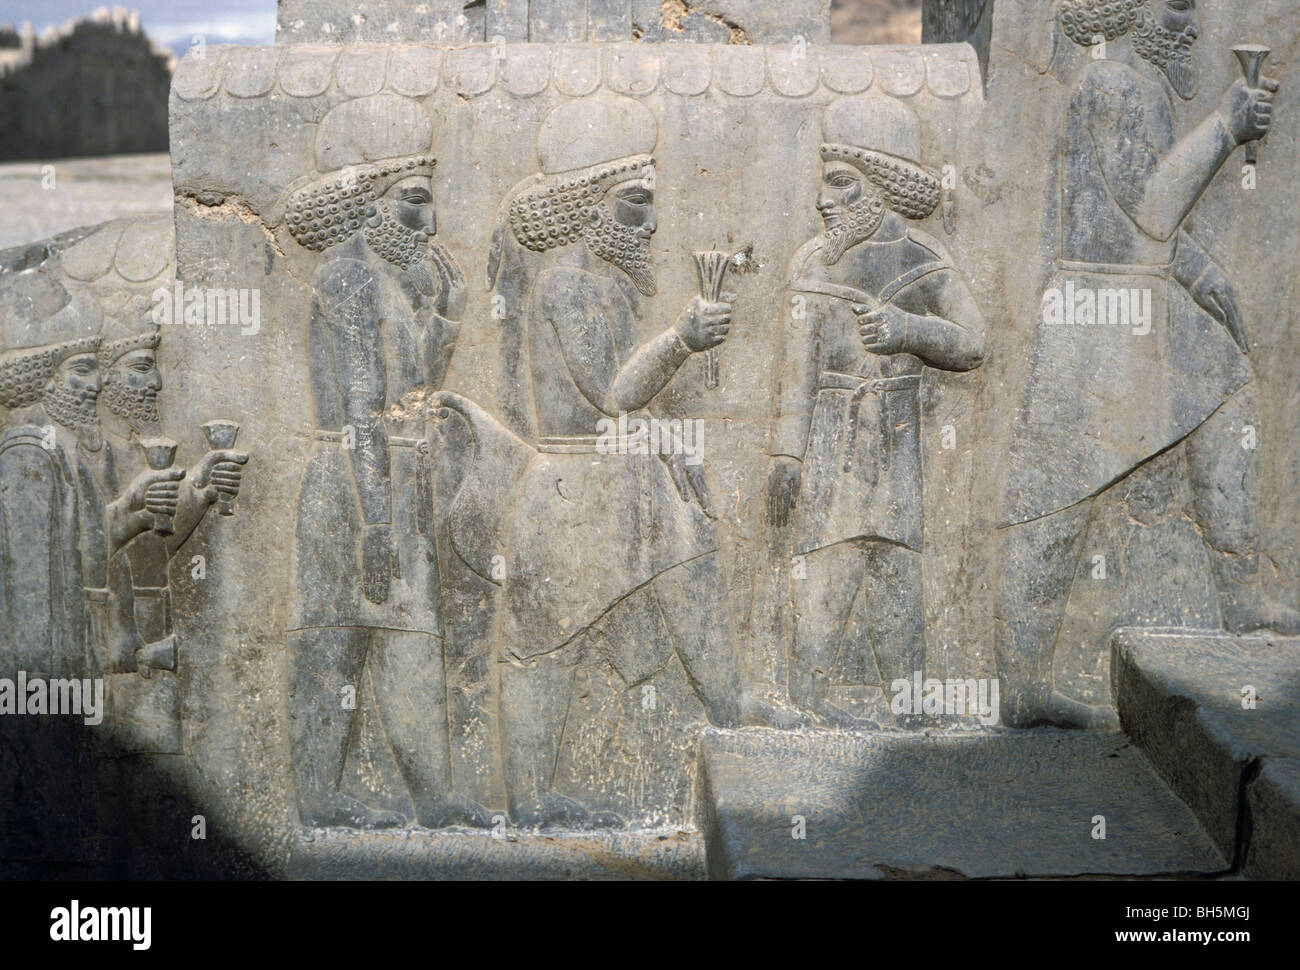 Mede nobili che trasportano fiori di loto come un segno di fedeltà, palazzo centrale, Persepolis, Iran 690125 205 Foto Stock